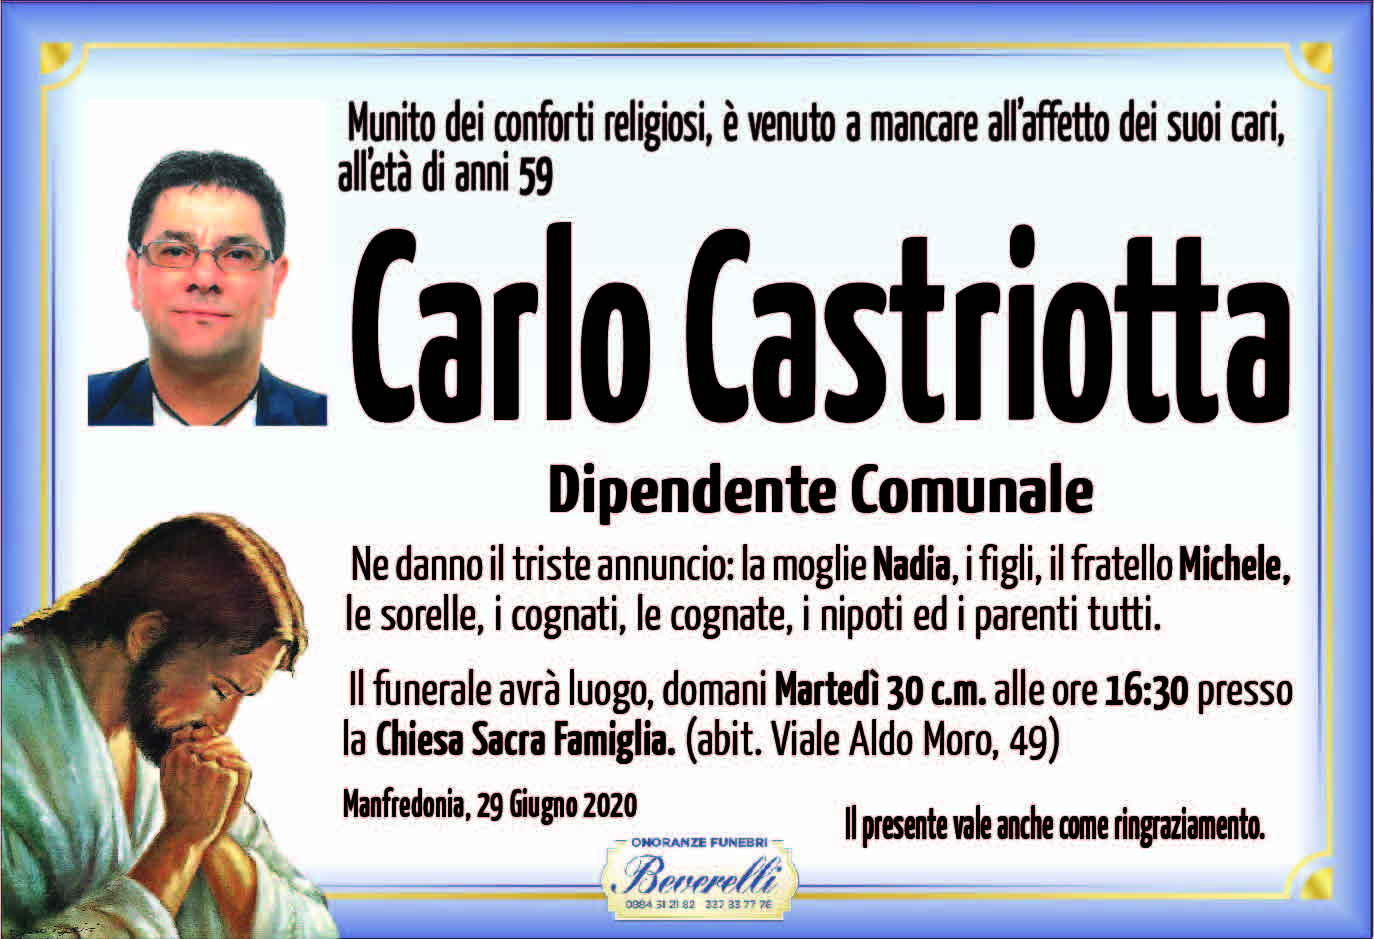 Carlo Castriotta